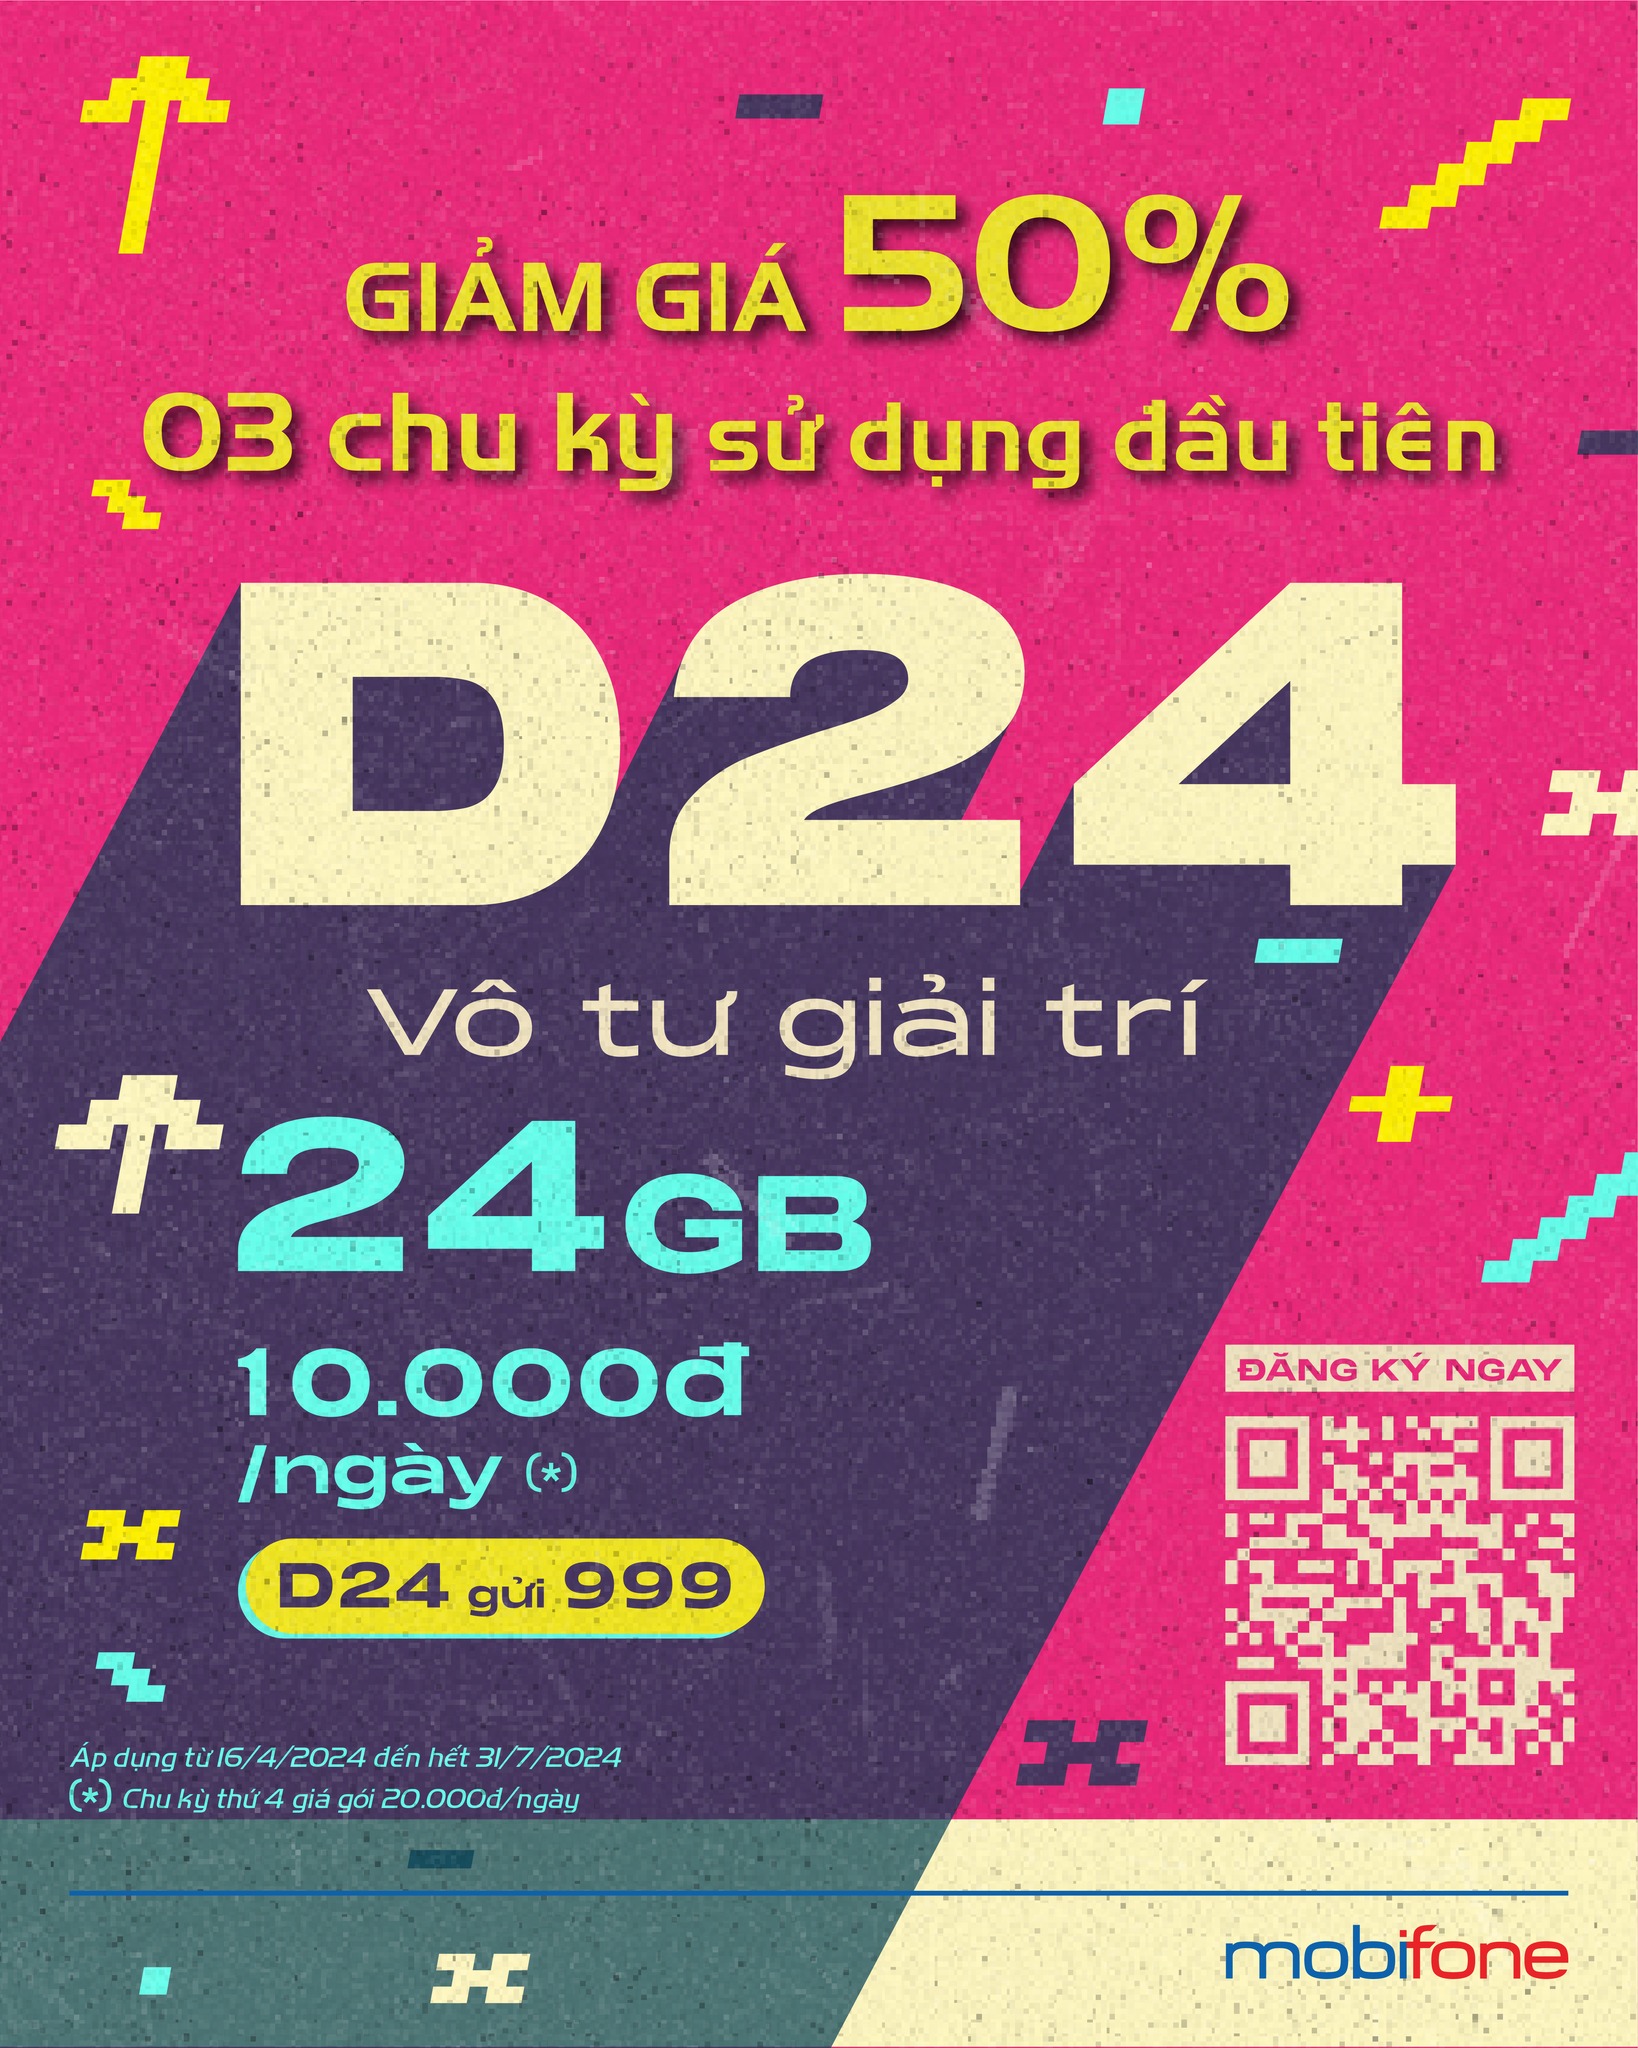 MobiFone tung deal giảm 50% giá gói cước ngày D24 Giam-gia-D24